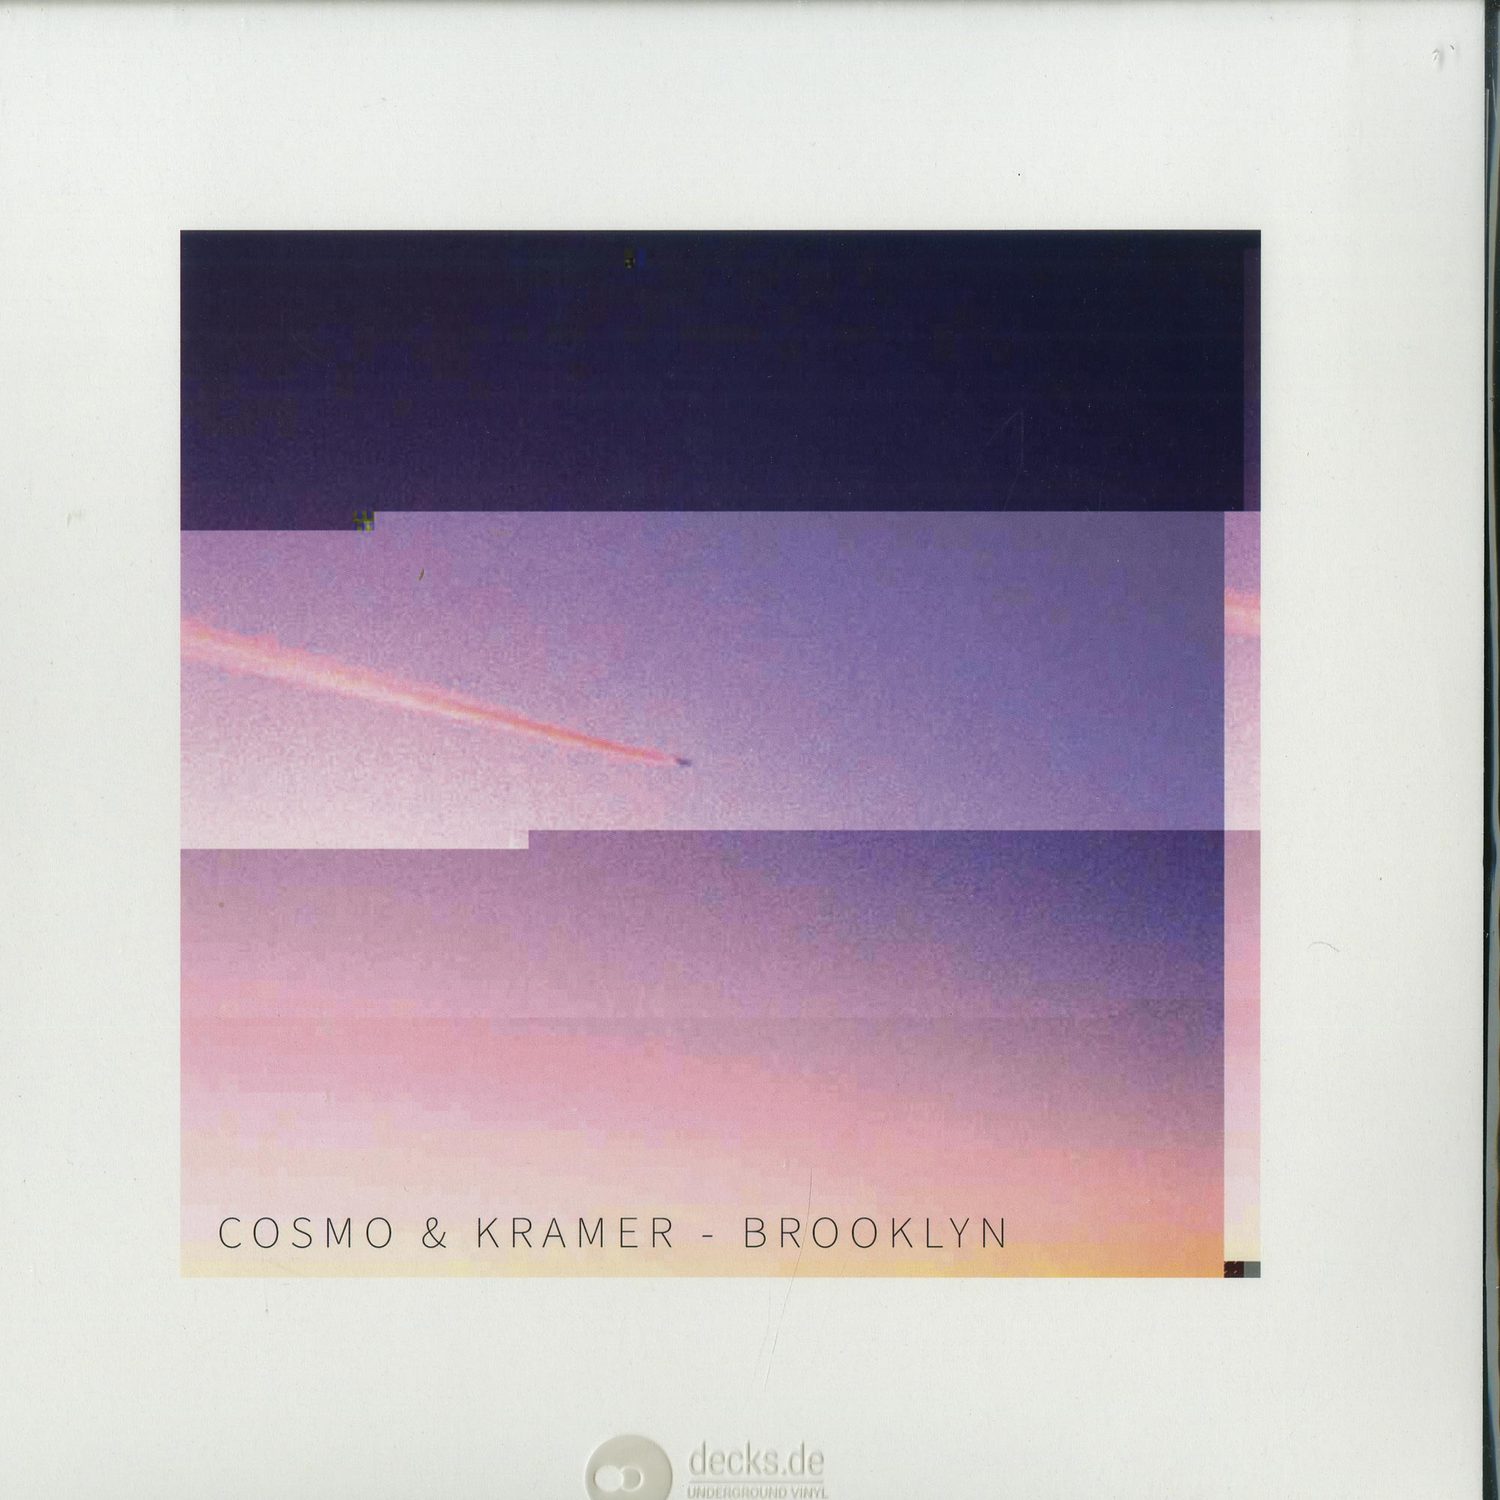 Cosmo & Kramer - BROOKLYN